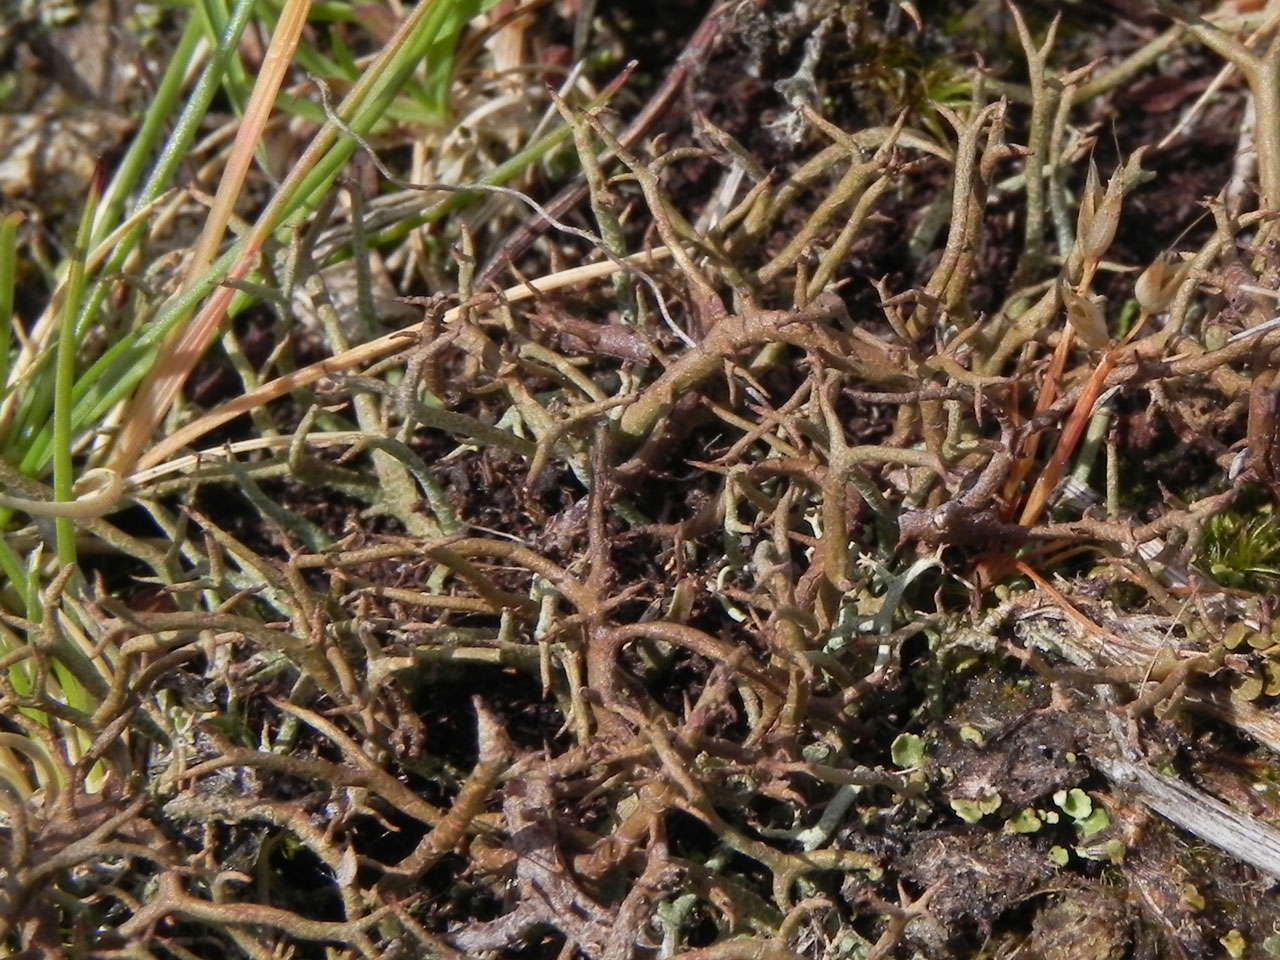 Cladonia furcata subsp. furcata, Gravelly Marsh, Beaulieu